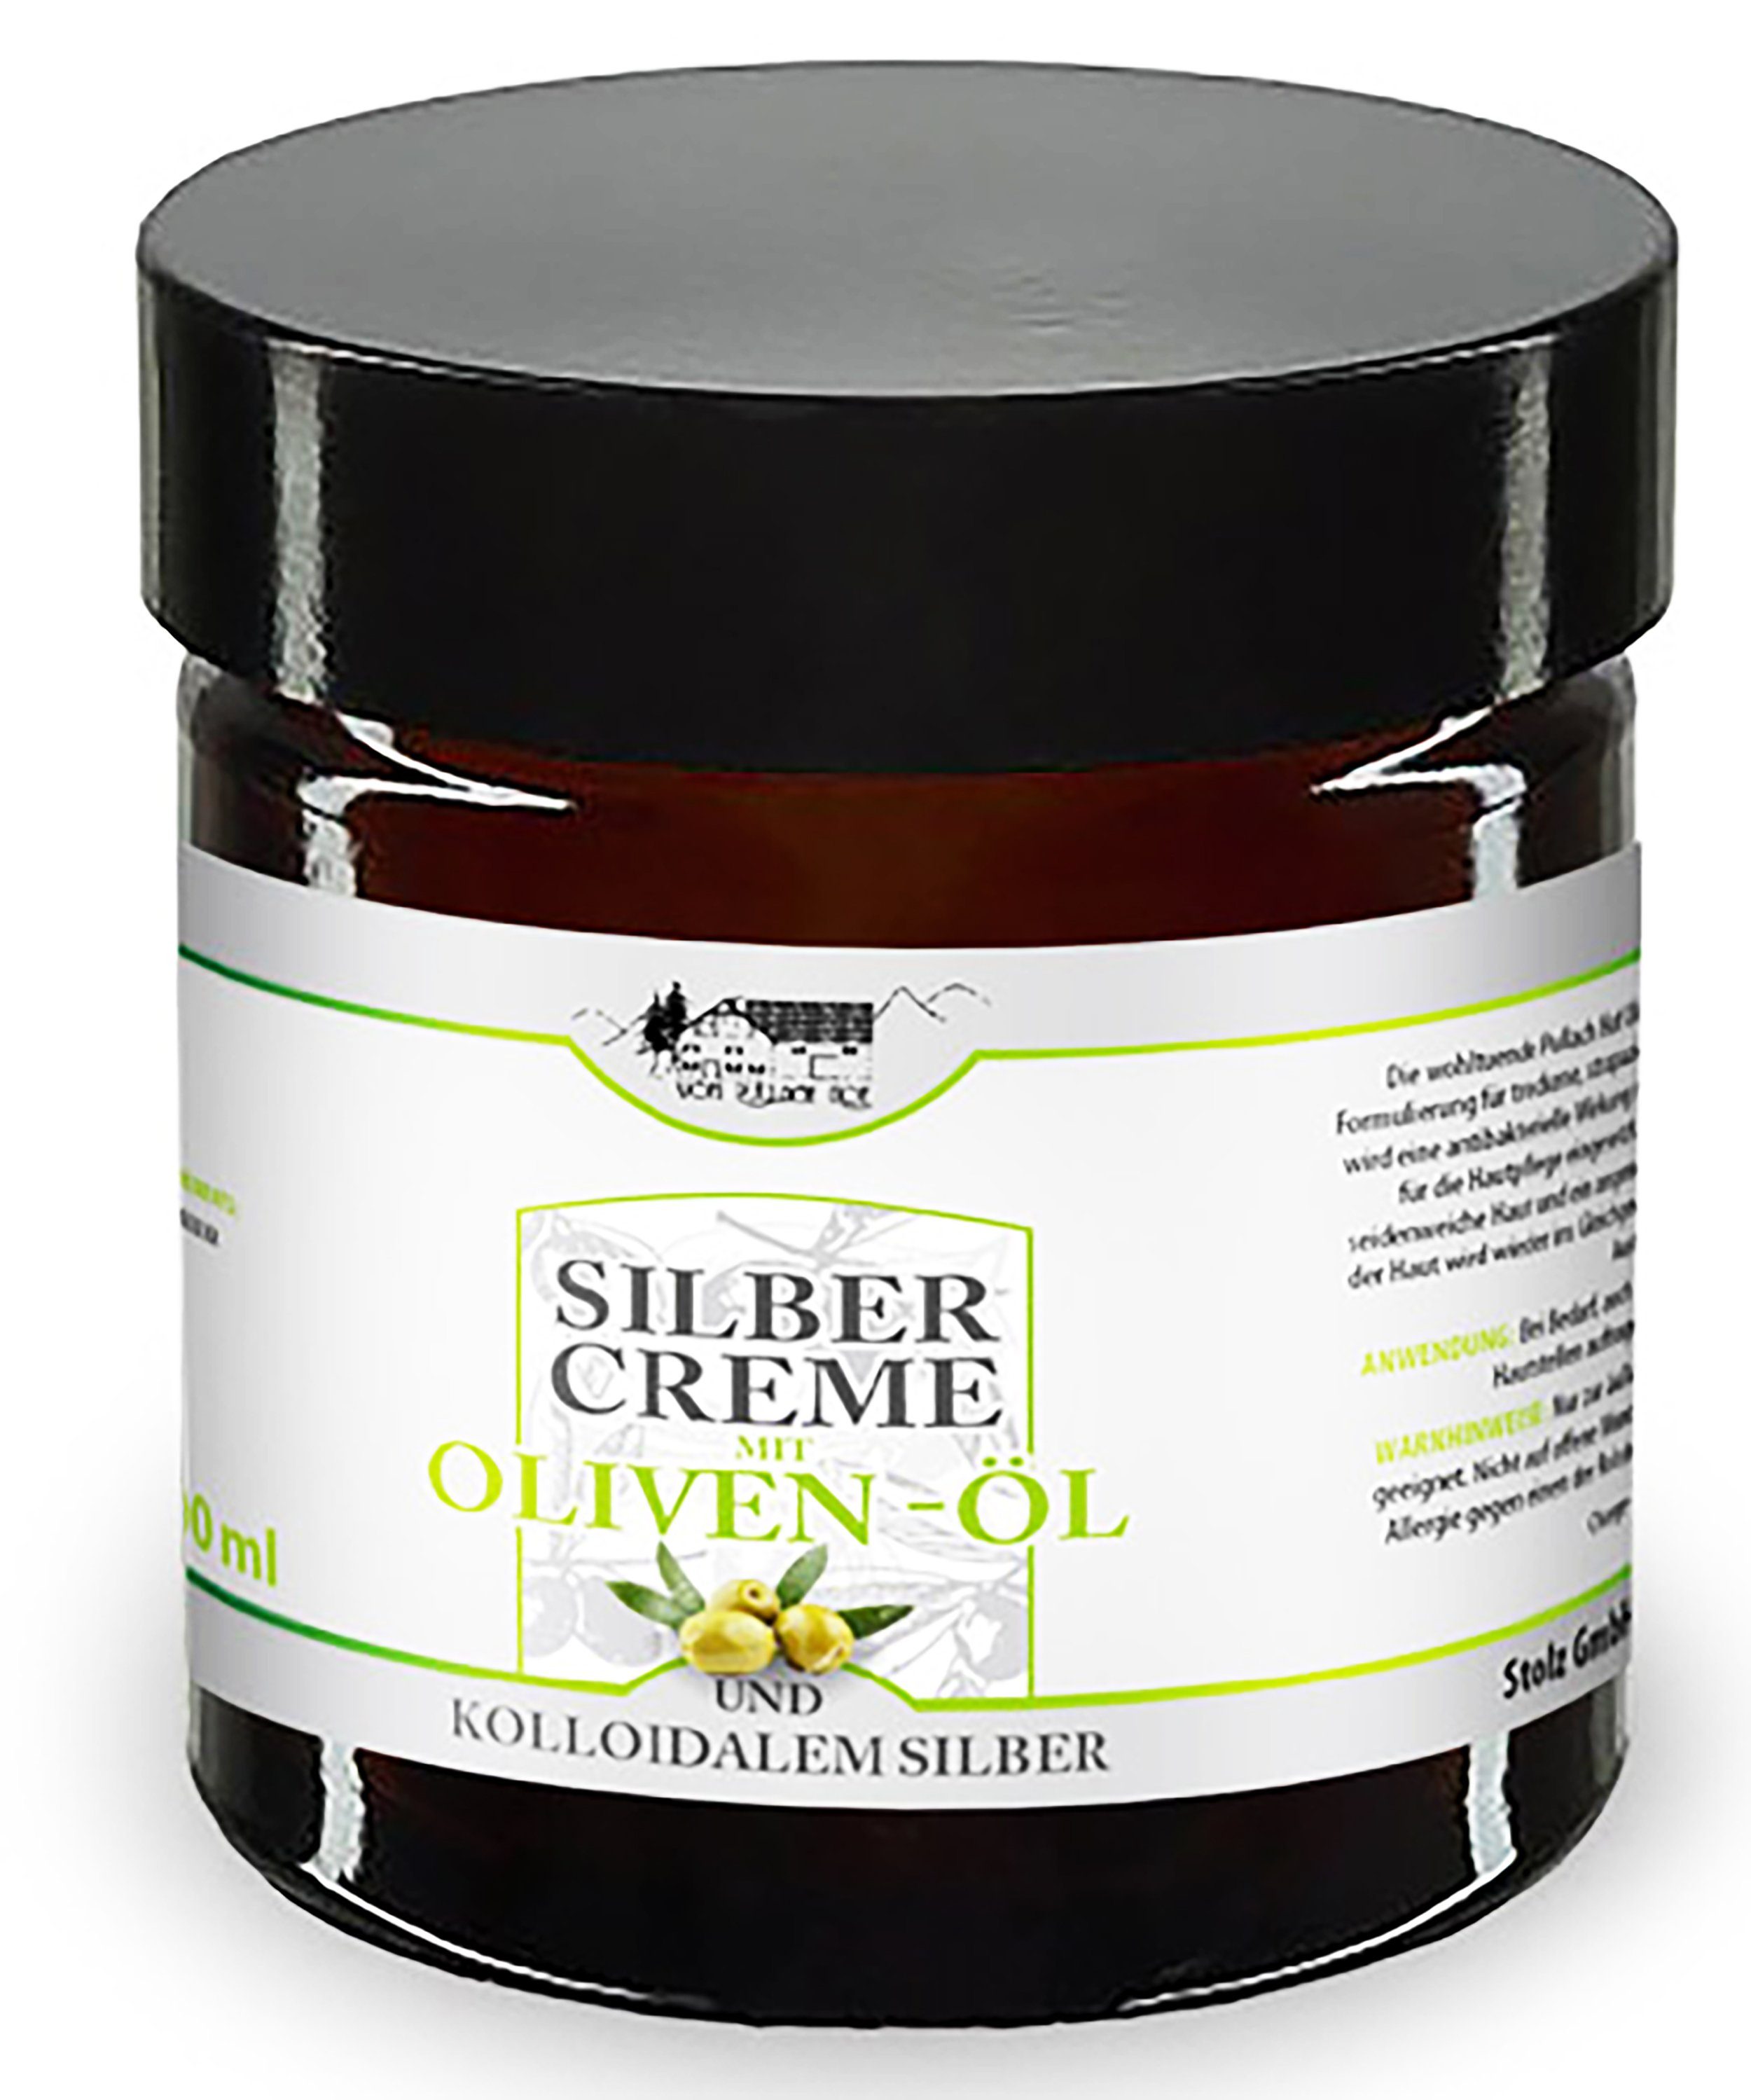 Balsam 72 Creme mit Silber Hautplege Hautcreme Haut 100ml vom Pullach Feuchtigkeitscreme und Oliven-Öl Kolloidalem Hof SILBERCREME